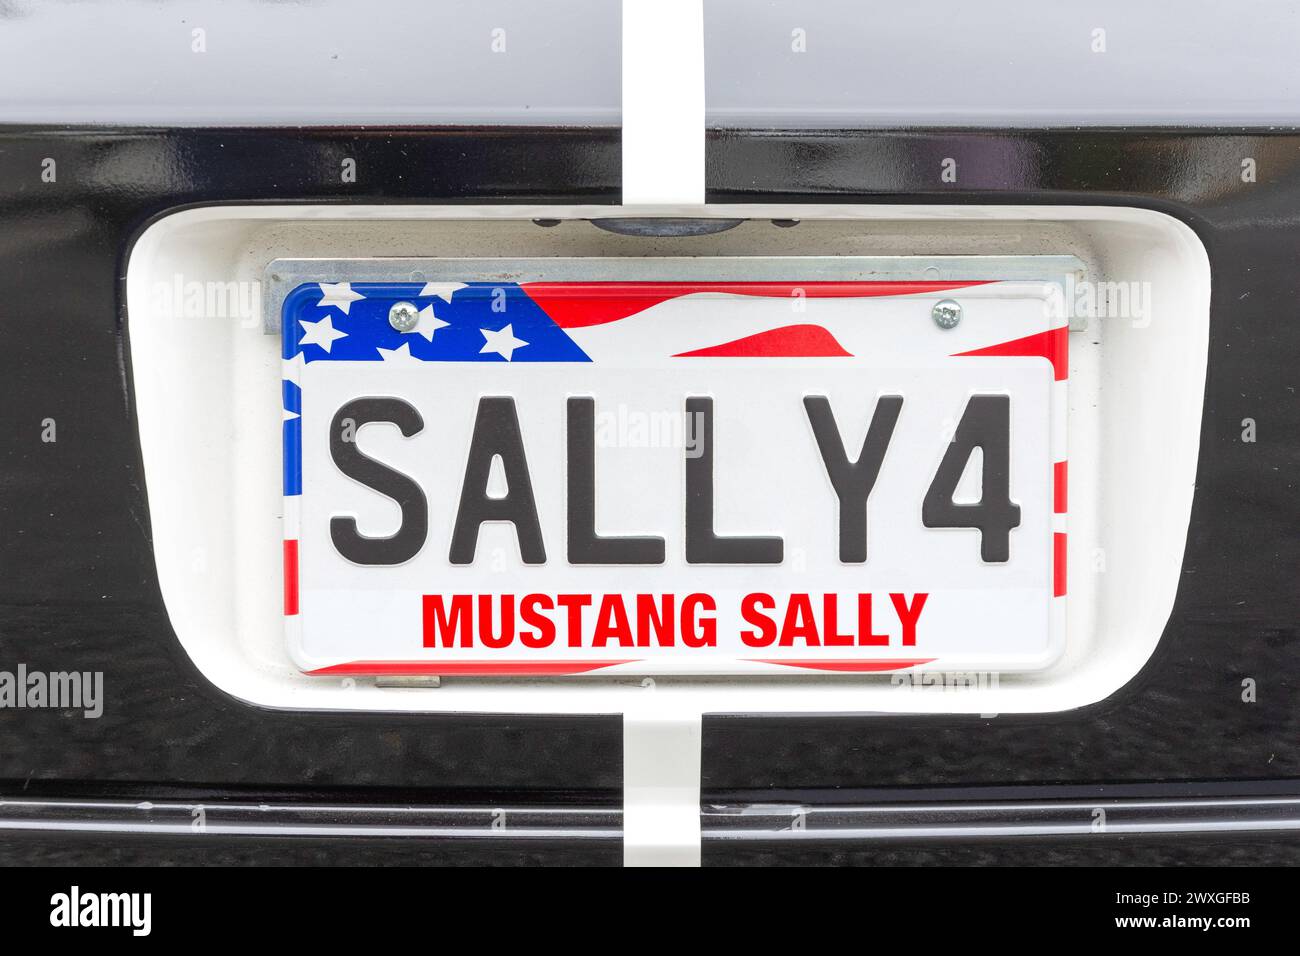 Mustang Sally (Sally4) plaque d'immatriculation de voiture sur voiture Mustang classique, Cashmere, Christchurch, Canterbury, Nouvelle-Zélande Banque D'Images